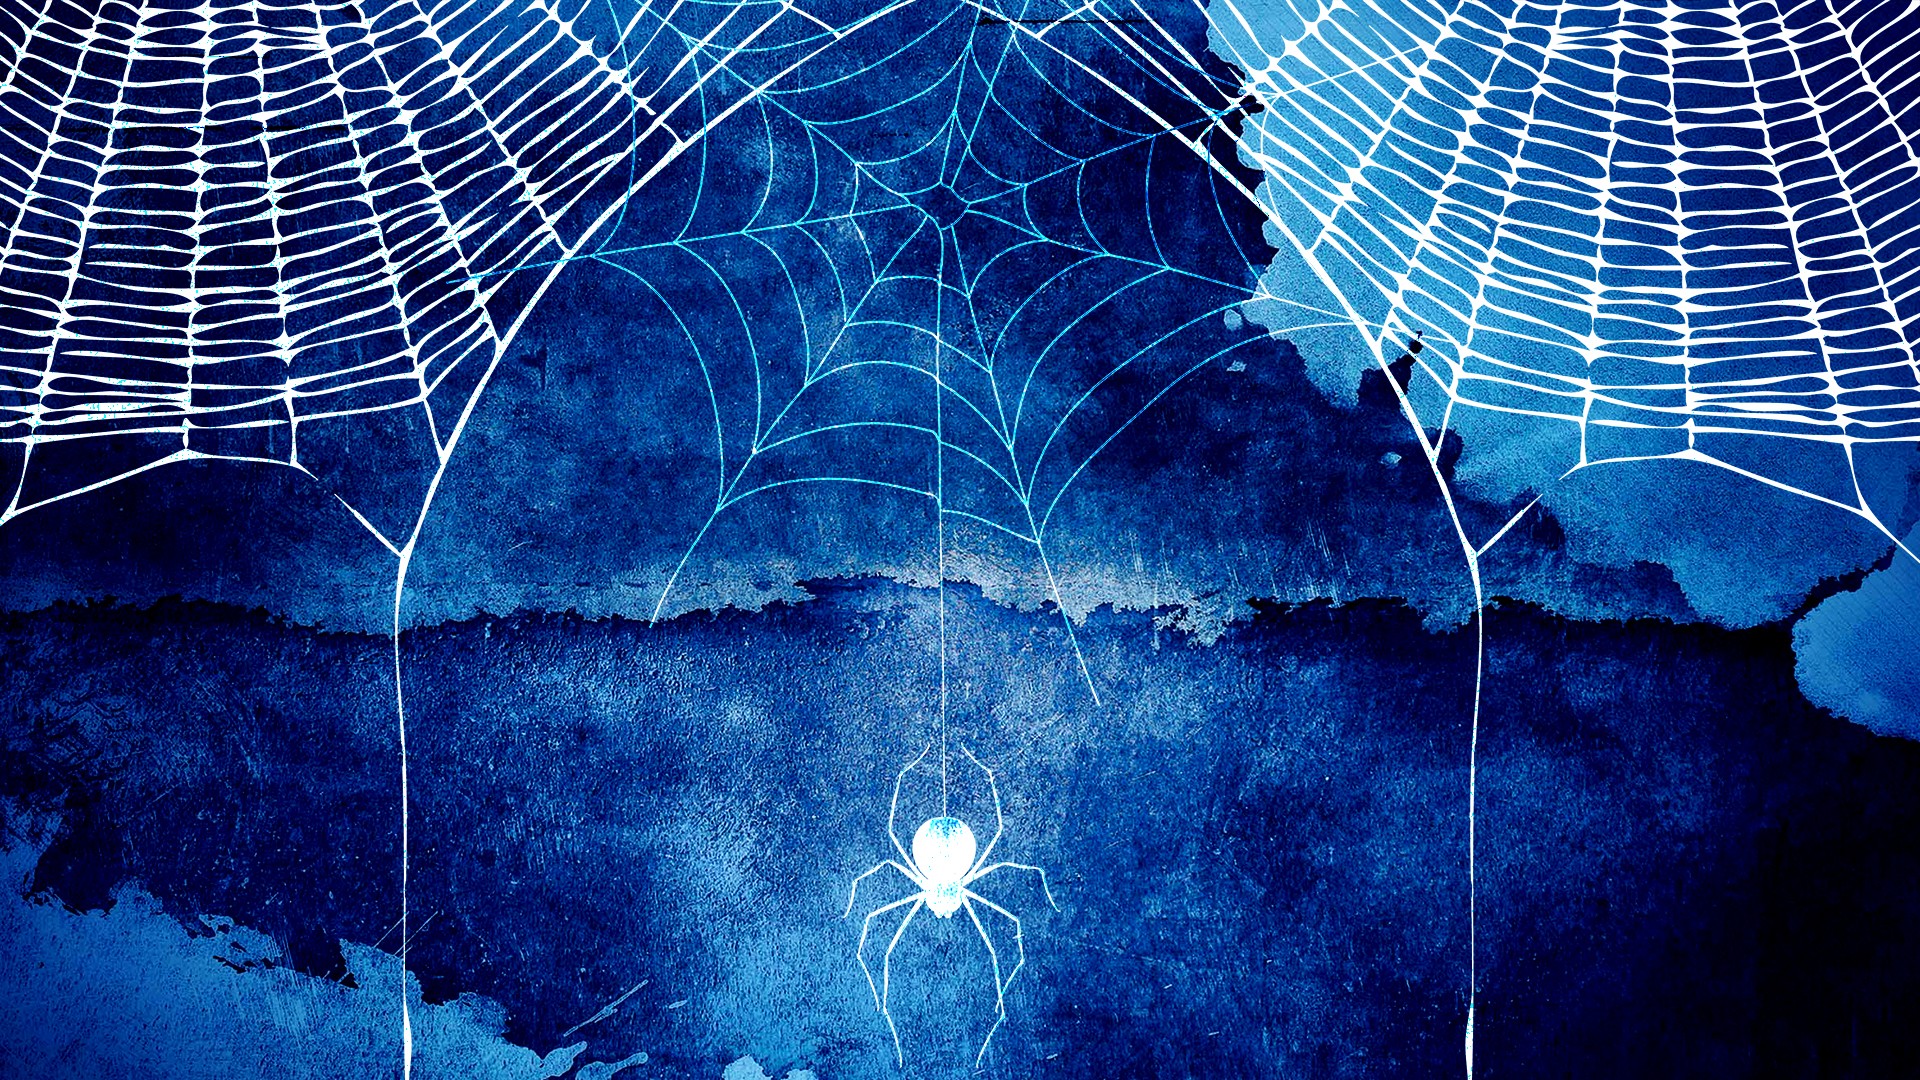 Halloween Spider Web Hd Background Wallpaper - Dark Blue Watercolor Hd Background - HD Wallpaper 